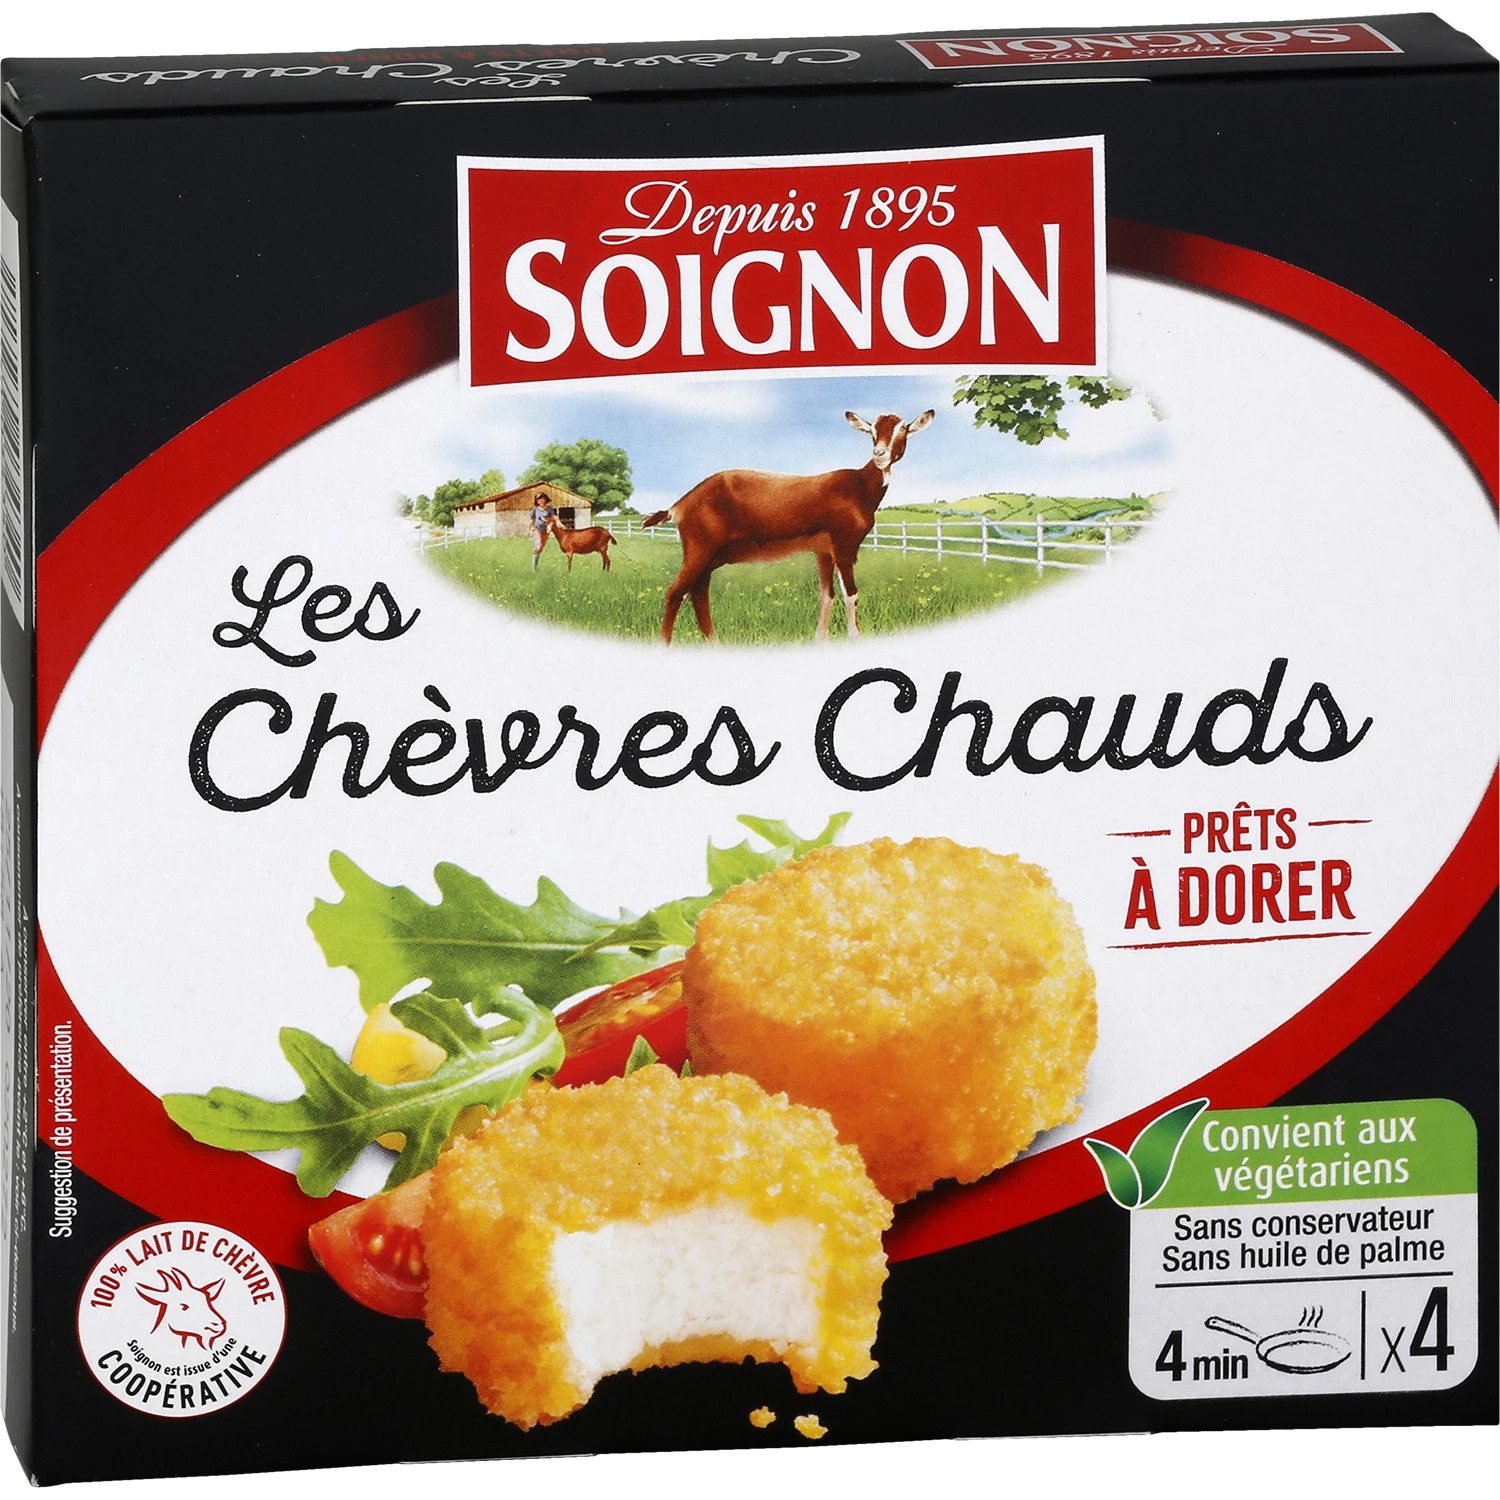 4 x Chevre Chaud (Goat's Cheese) 100g